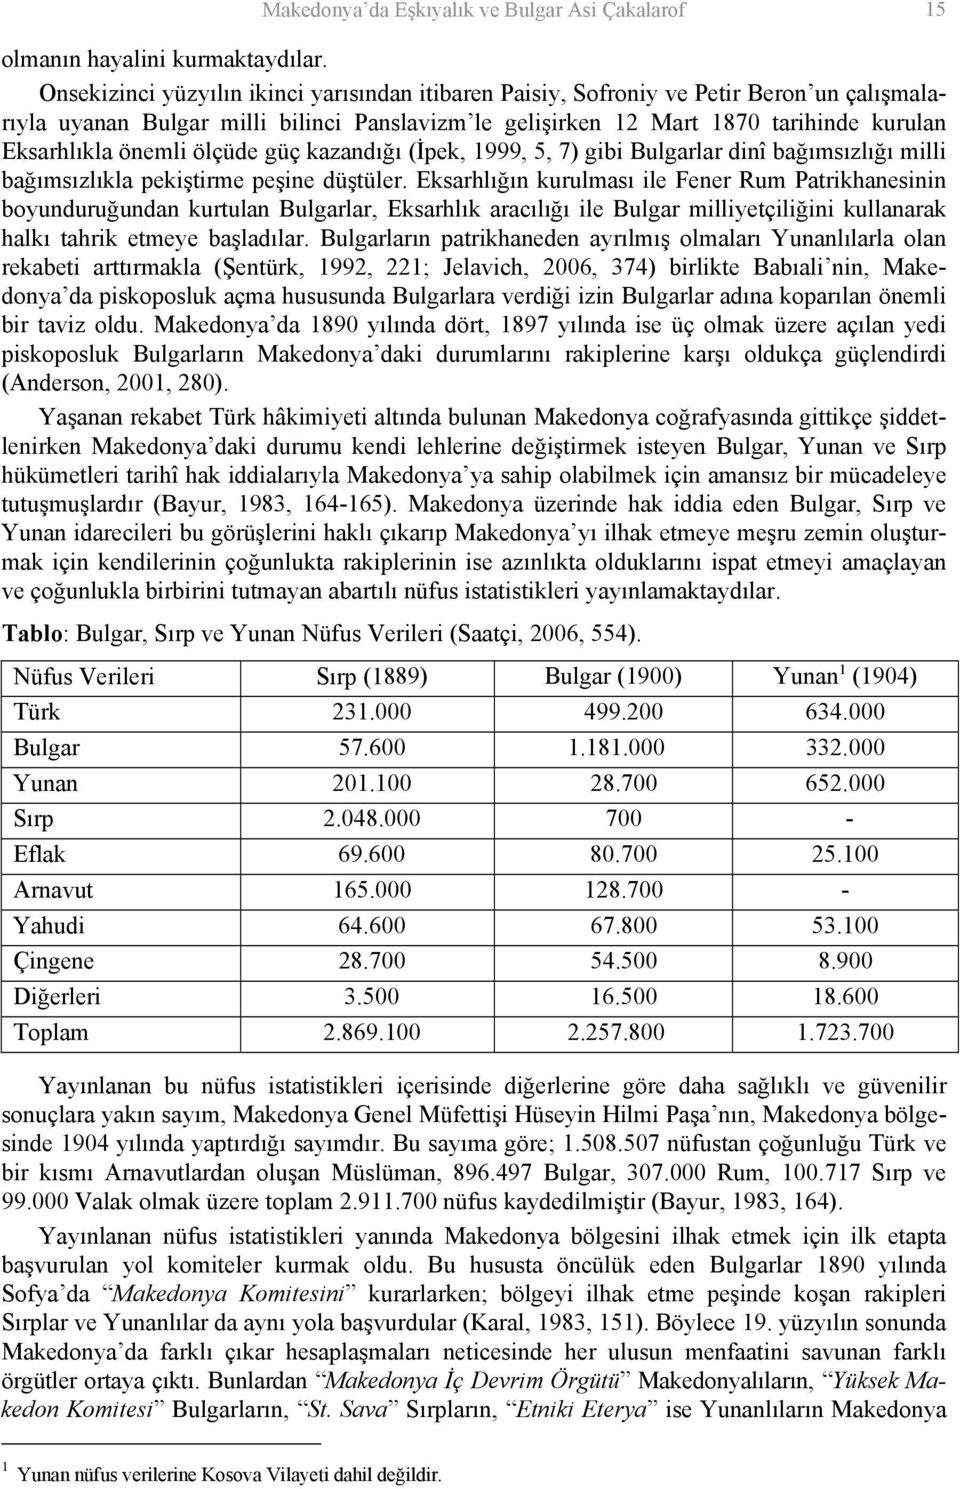 önemli ölçüde güç kazandığı (İpek, 1999, 5, 7) gibi Bulgarlar dinî bağımsızlığı milli bağımsızlıkla pekiştirme peşine düştüler.